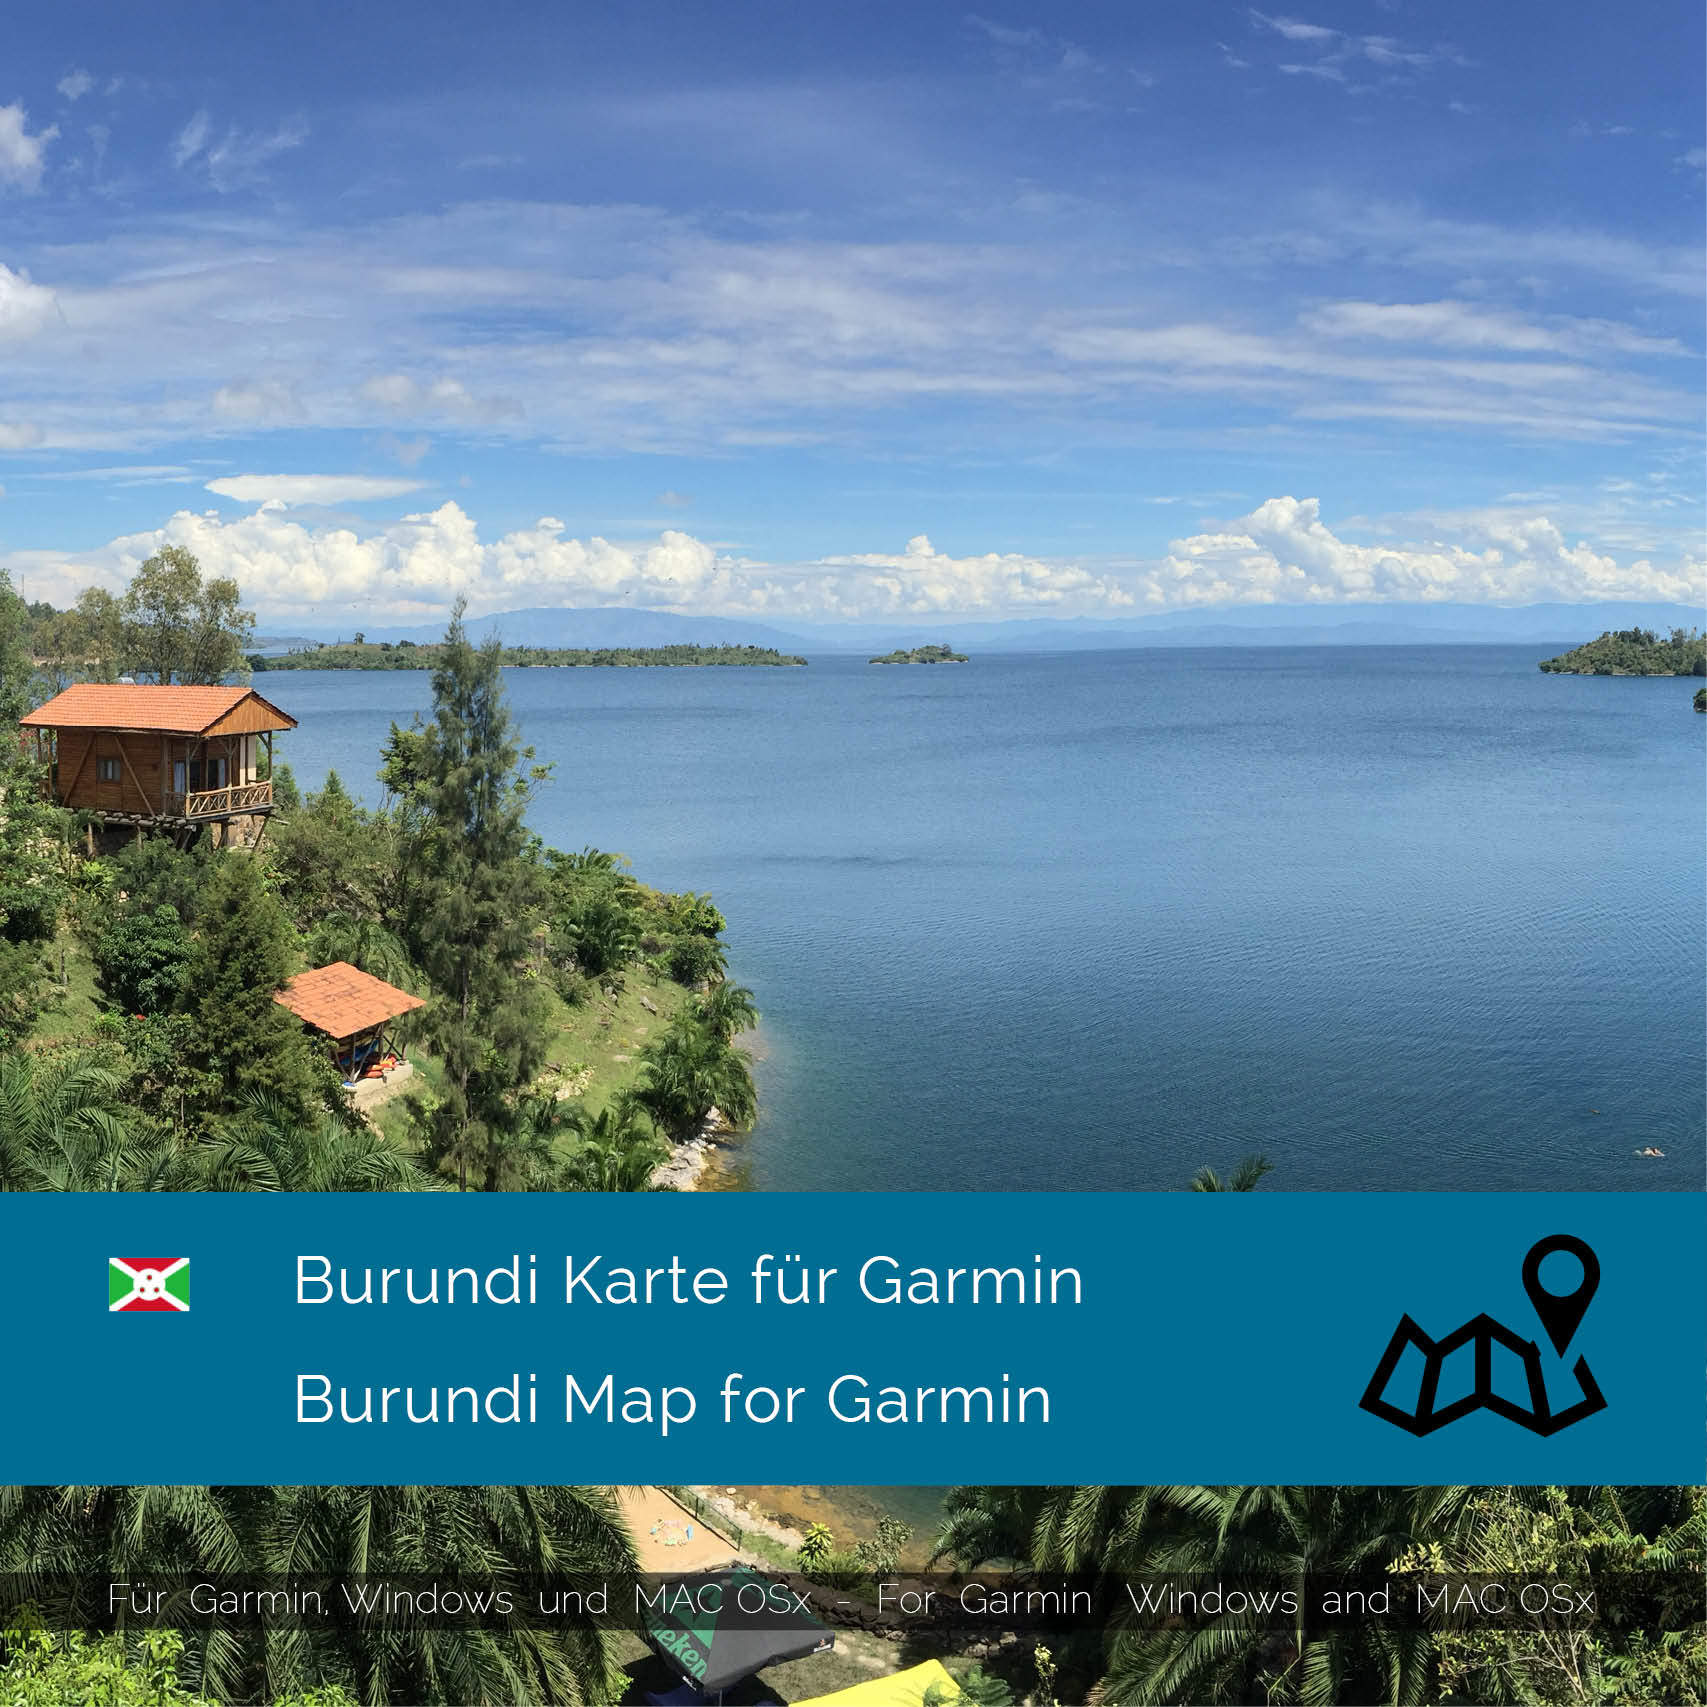 Burundi GPS Karte für Garmin | Africa Expedition